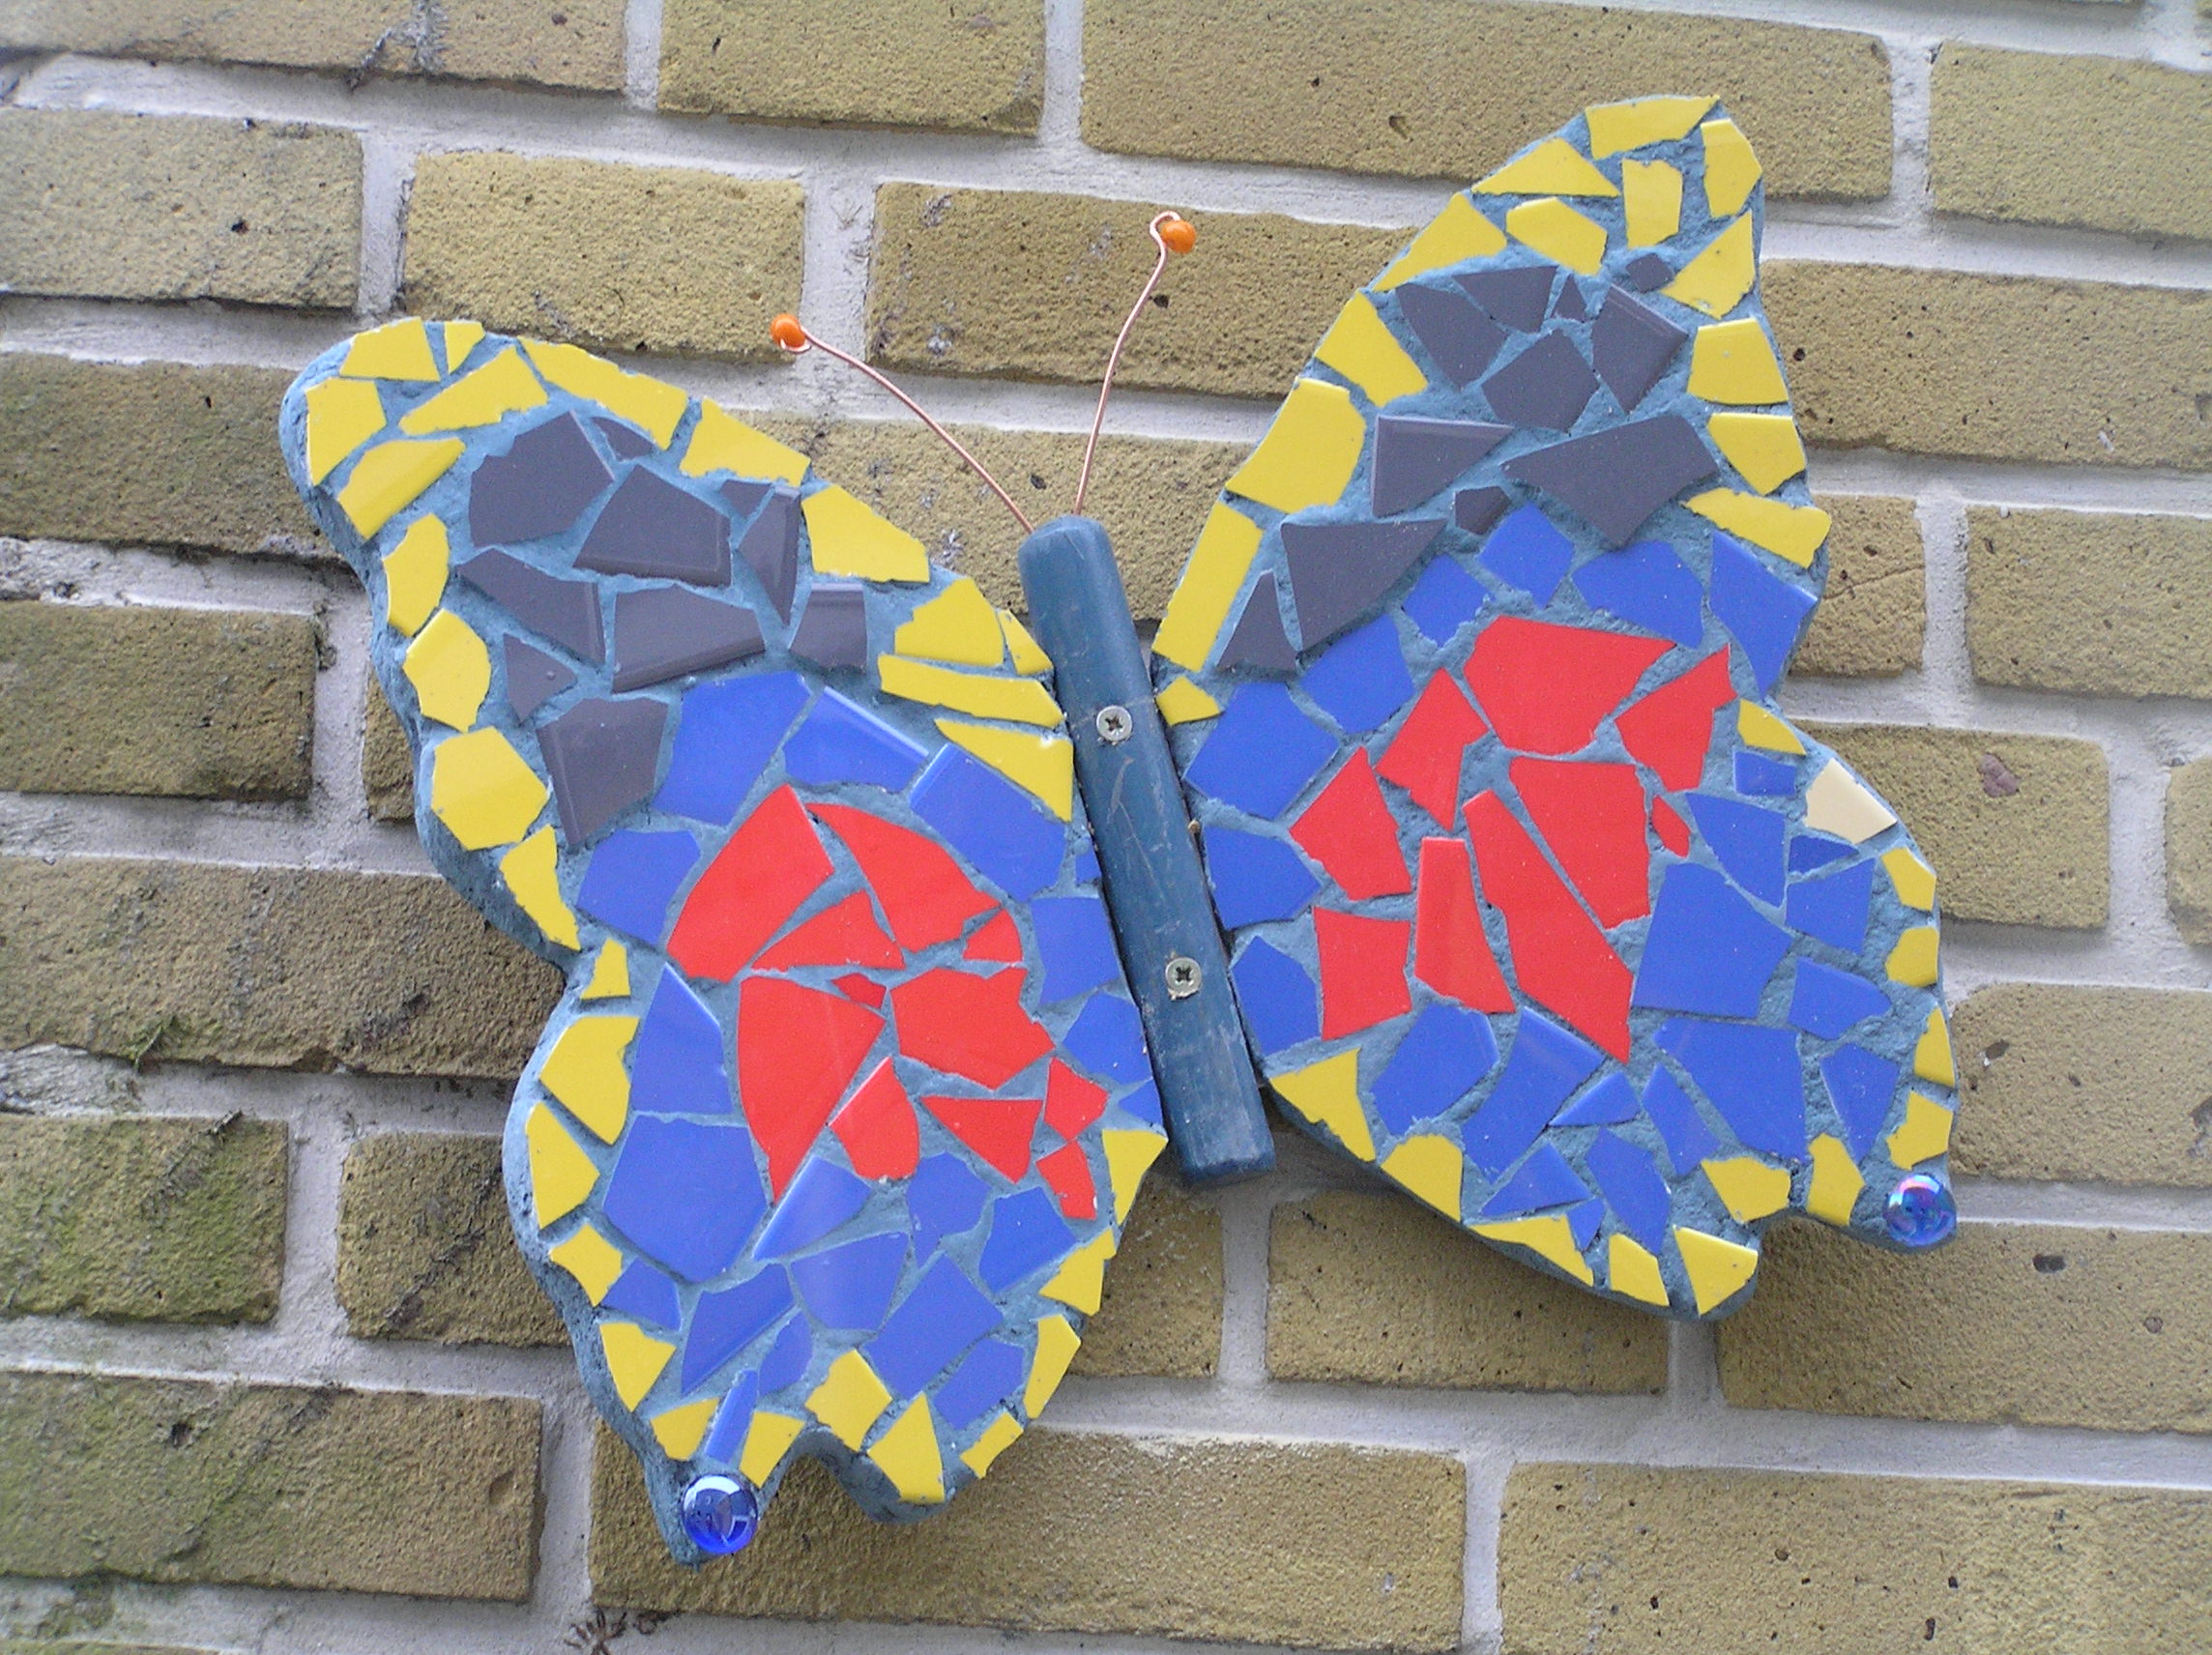 mozaiek-vlinder